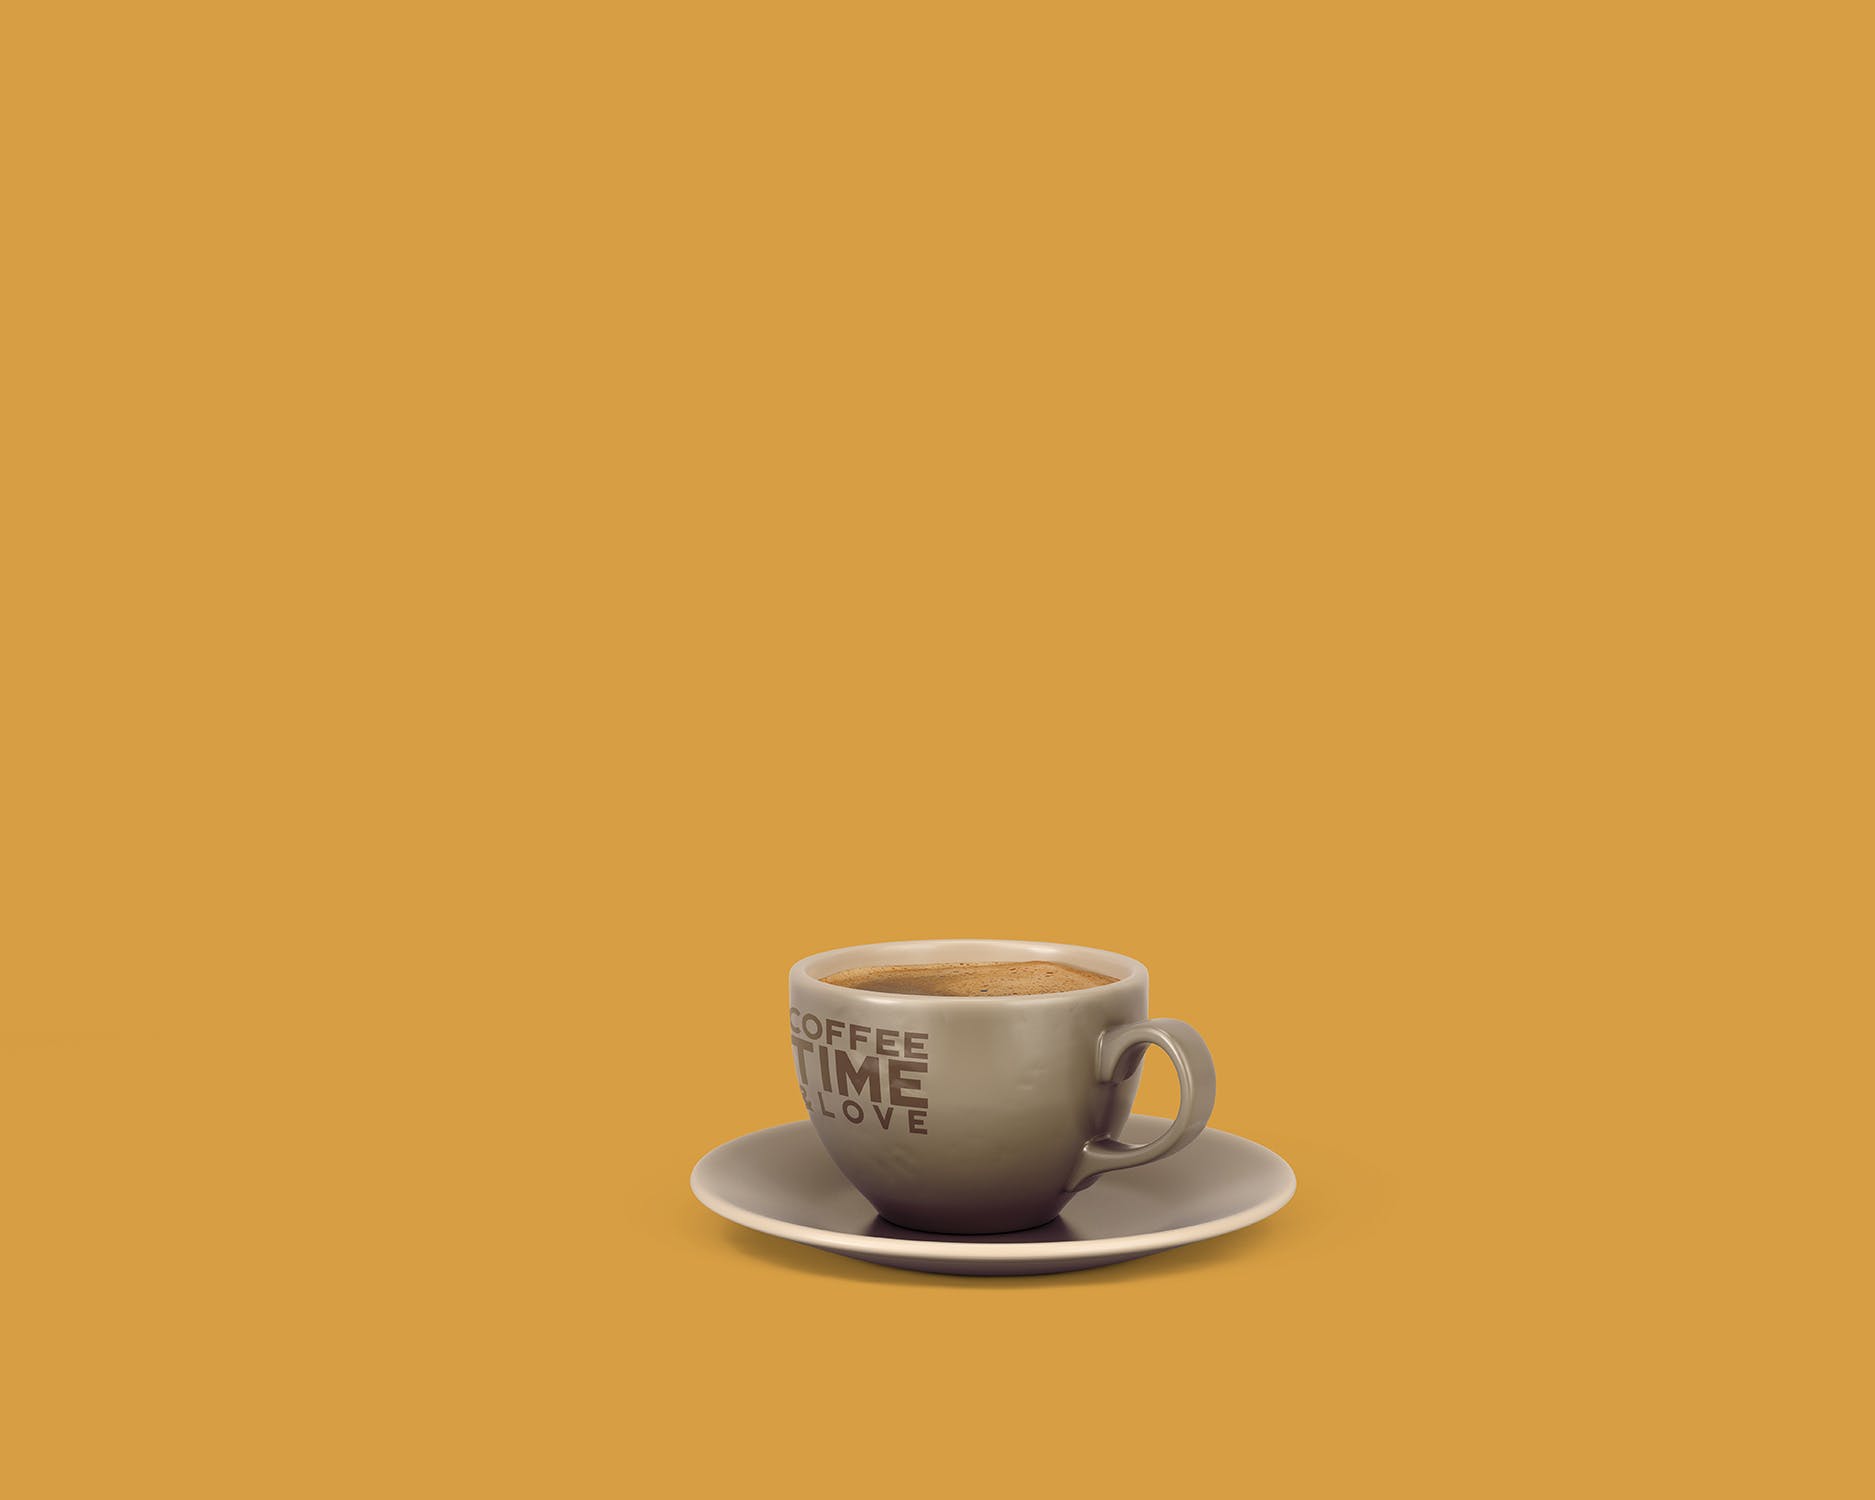 8个咖啡马克杯设计图第一素材精选 8 Coffee Cup Mockups插图(8)